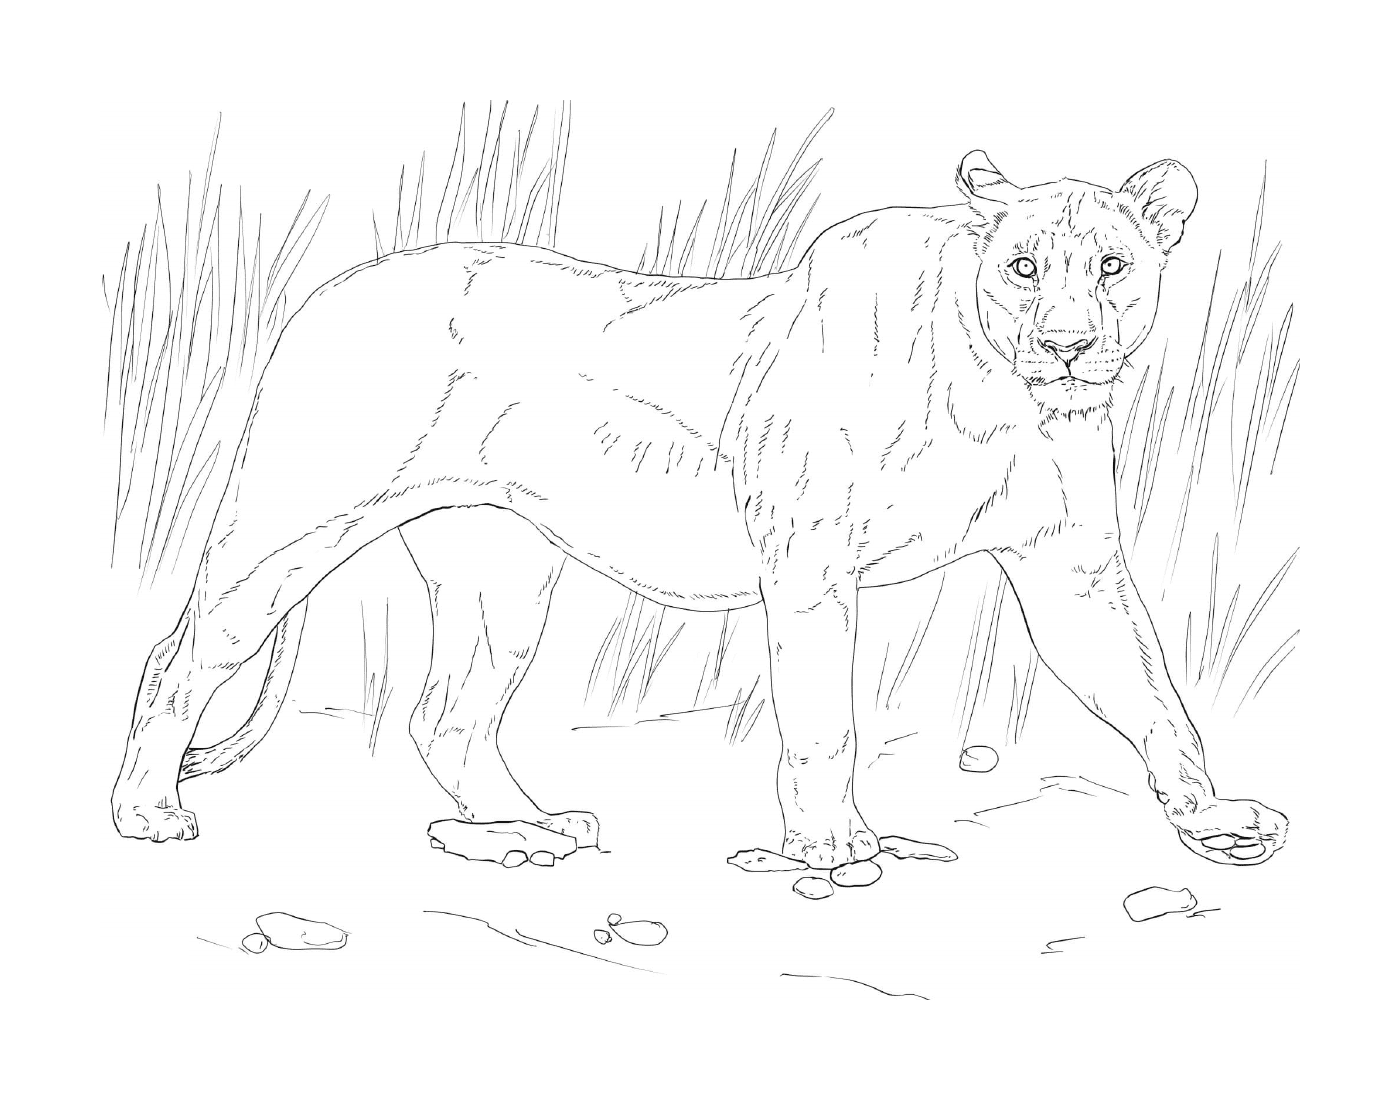  leona caminando en la hierba 